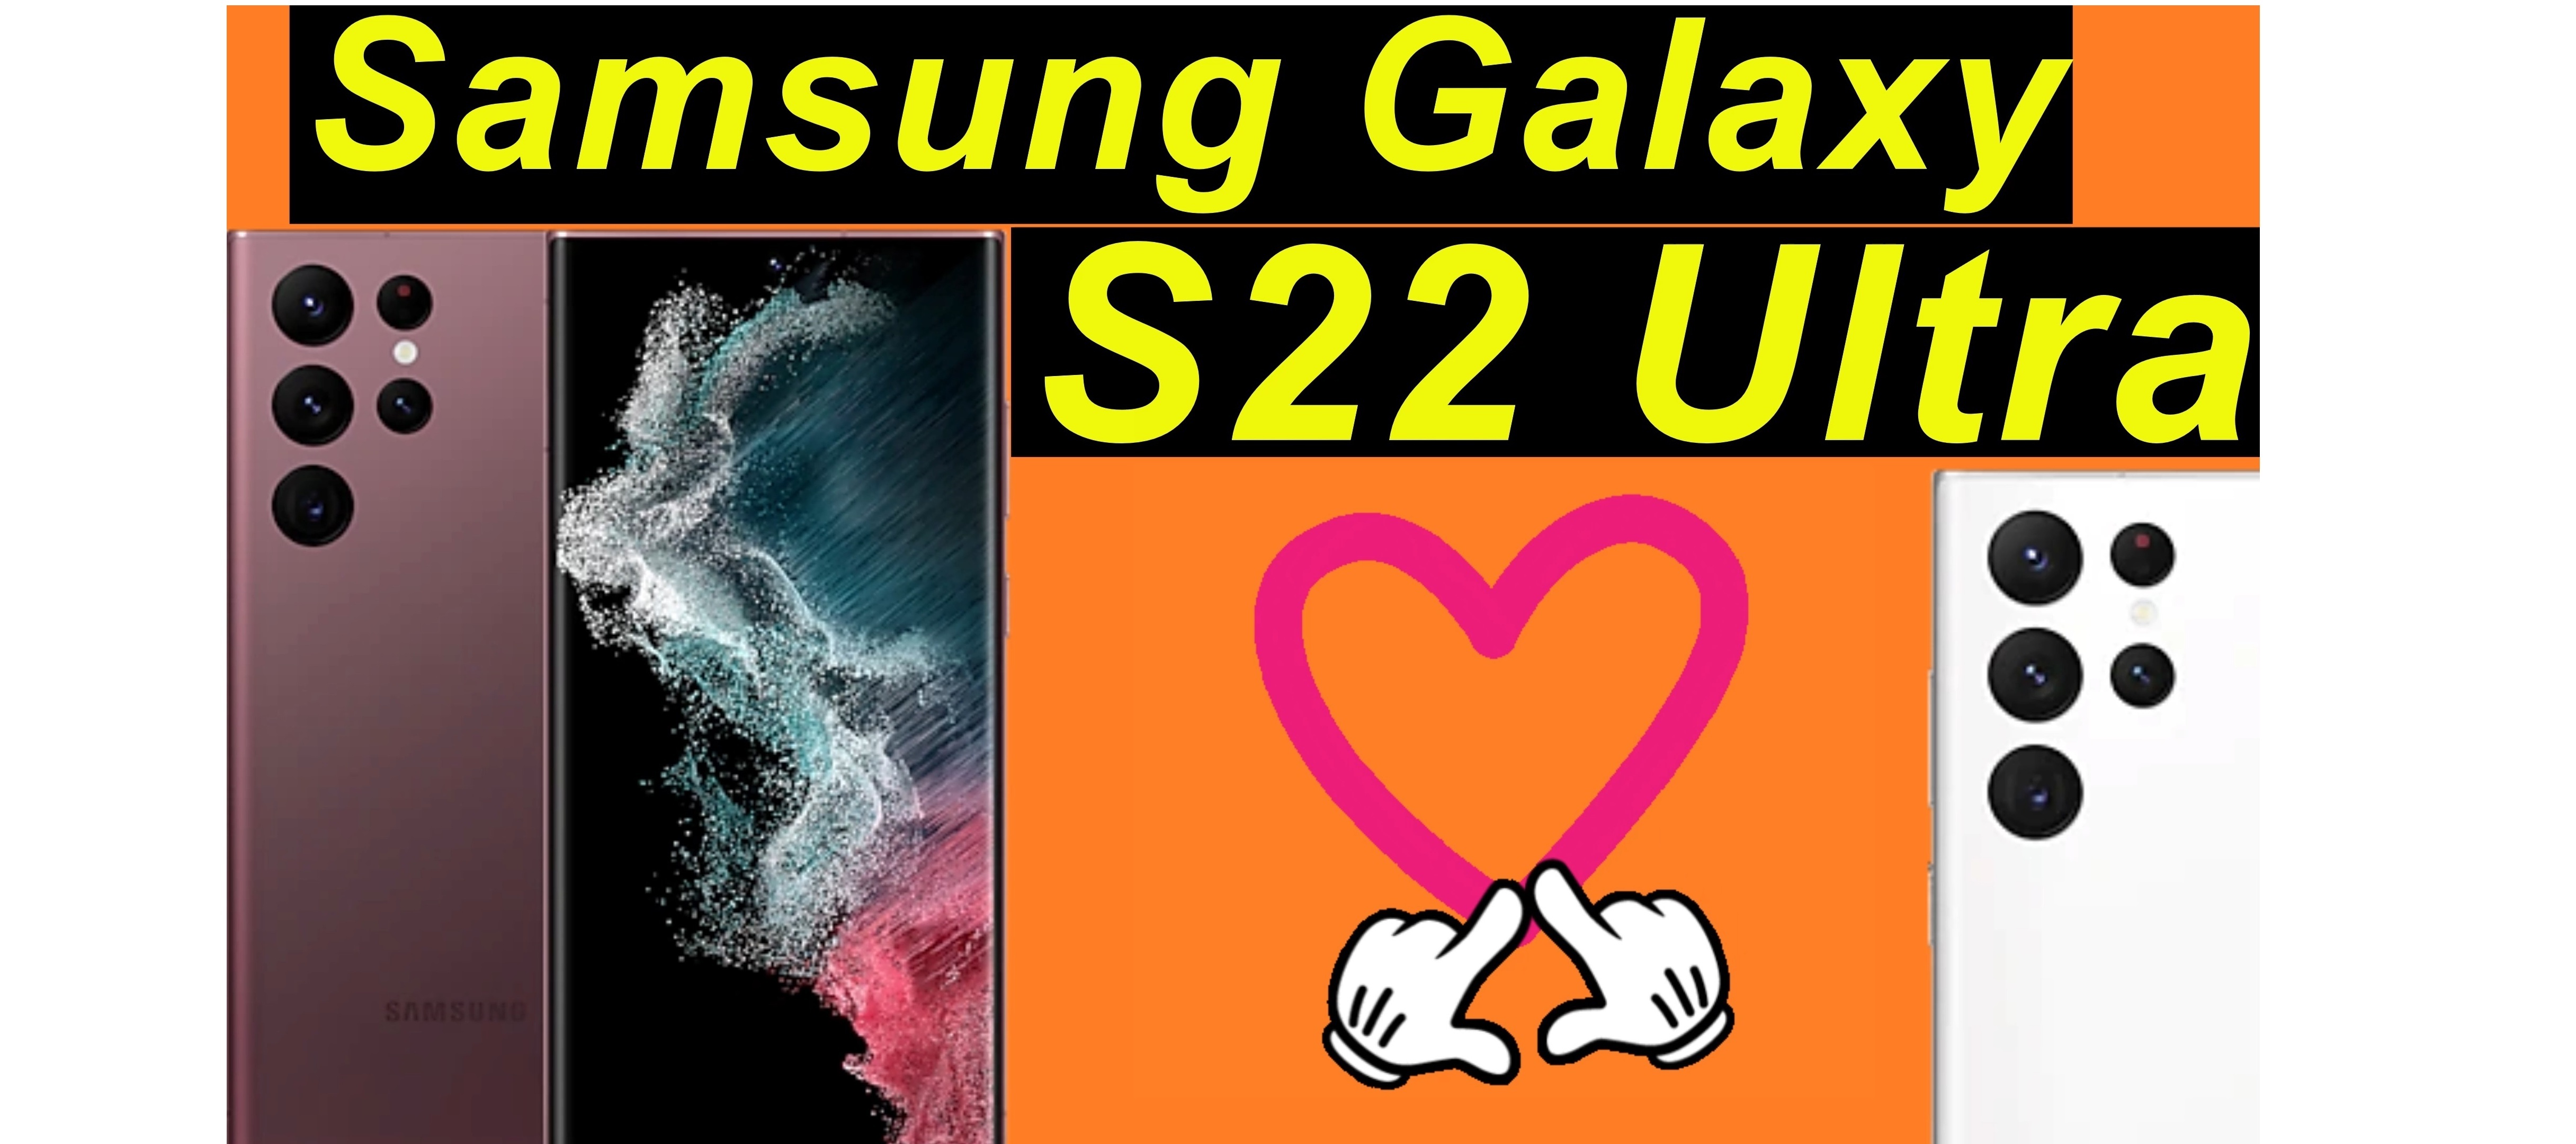 Mein Herz im Sturm erobert - Samsung Galaxy S22 Ultra